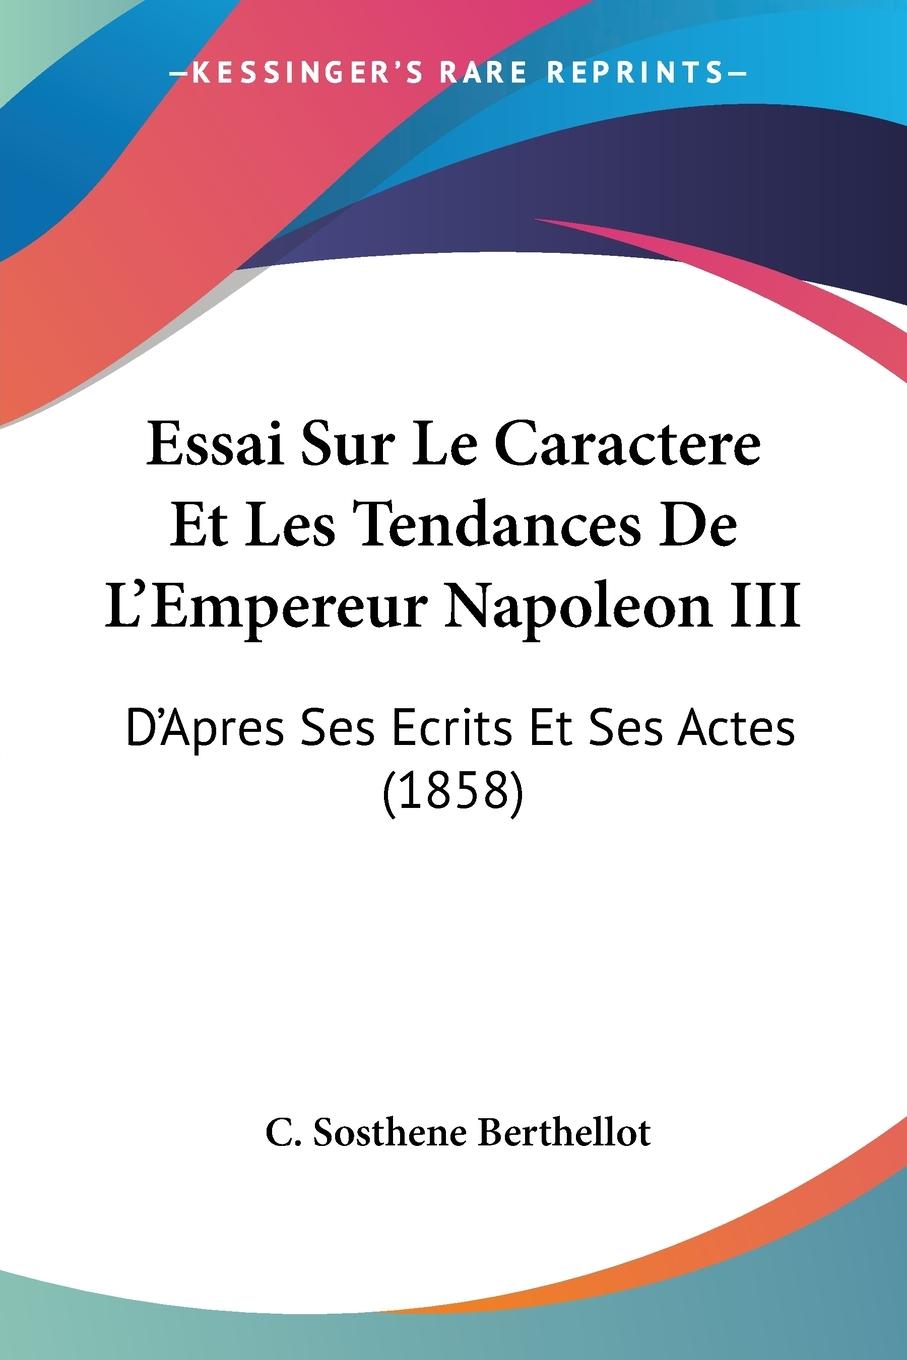 Essai Sur Le Caractere Et Les Tendances De L Empereur Napoleon III - Berthellot, C. Sosthene